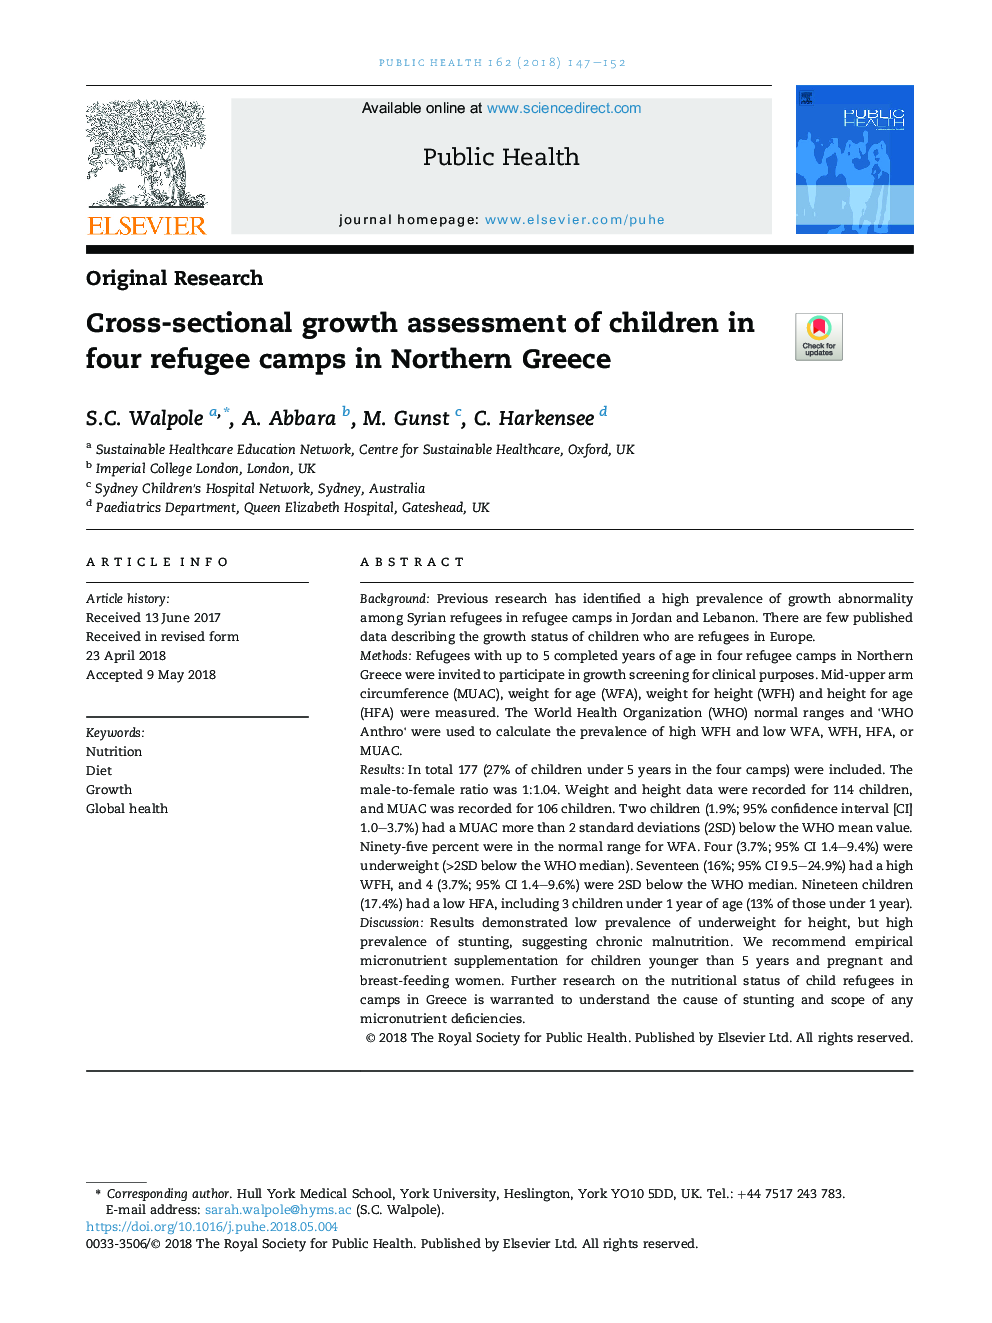 بررسی مقطعی رشد کودکان در چهار اردوگاه پناهندگان در شمال یونان 